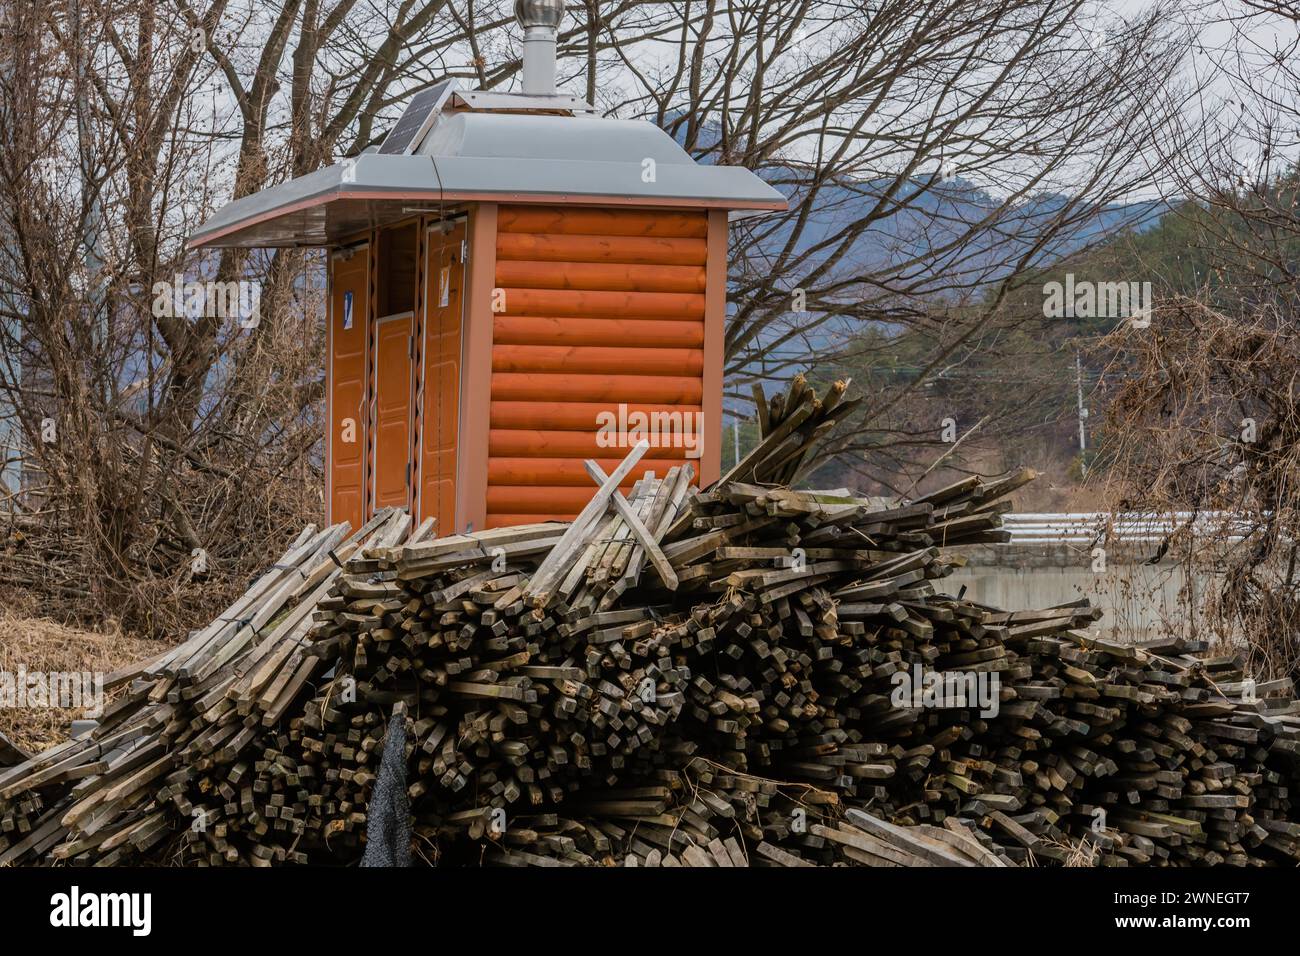 Pila de estacas de madera utilizadas en la agricultura de ginseng apiladas junto al baño público de madera roja en el área silvestre en el frío día de invierno en Corea del Sur Foto de stock